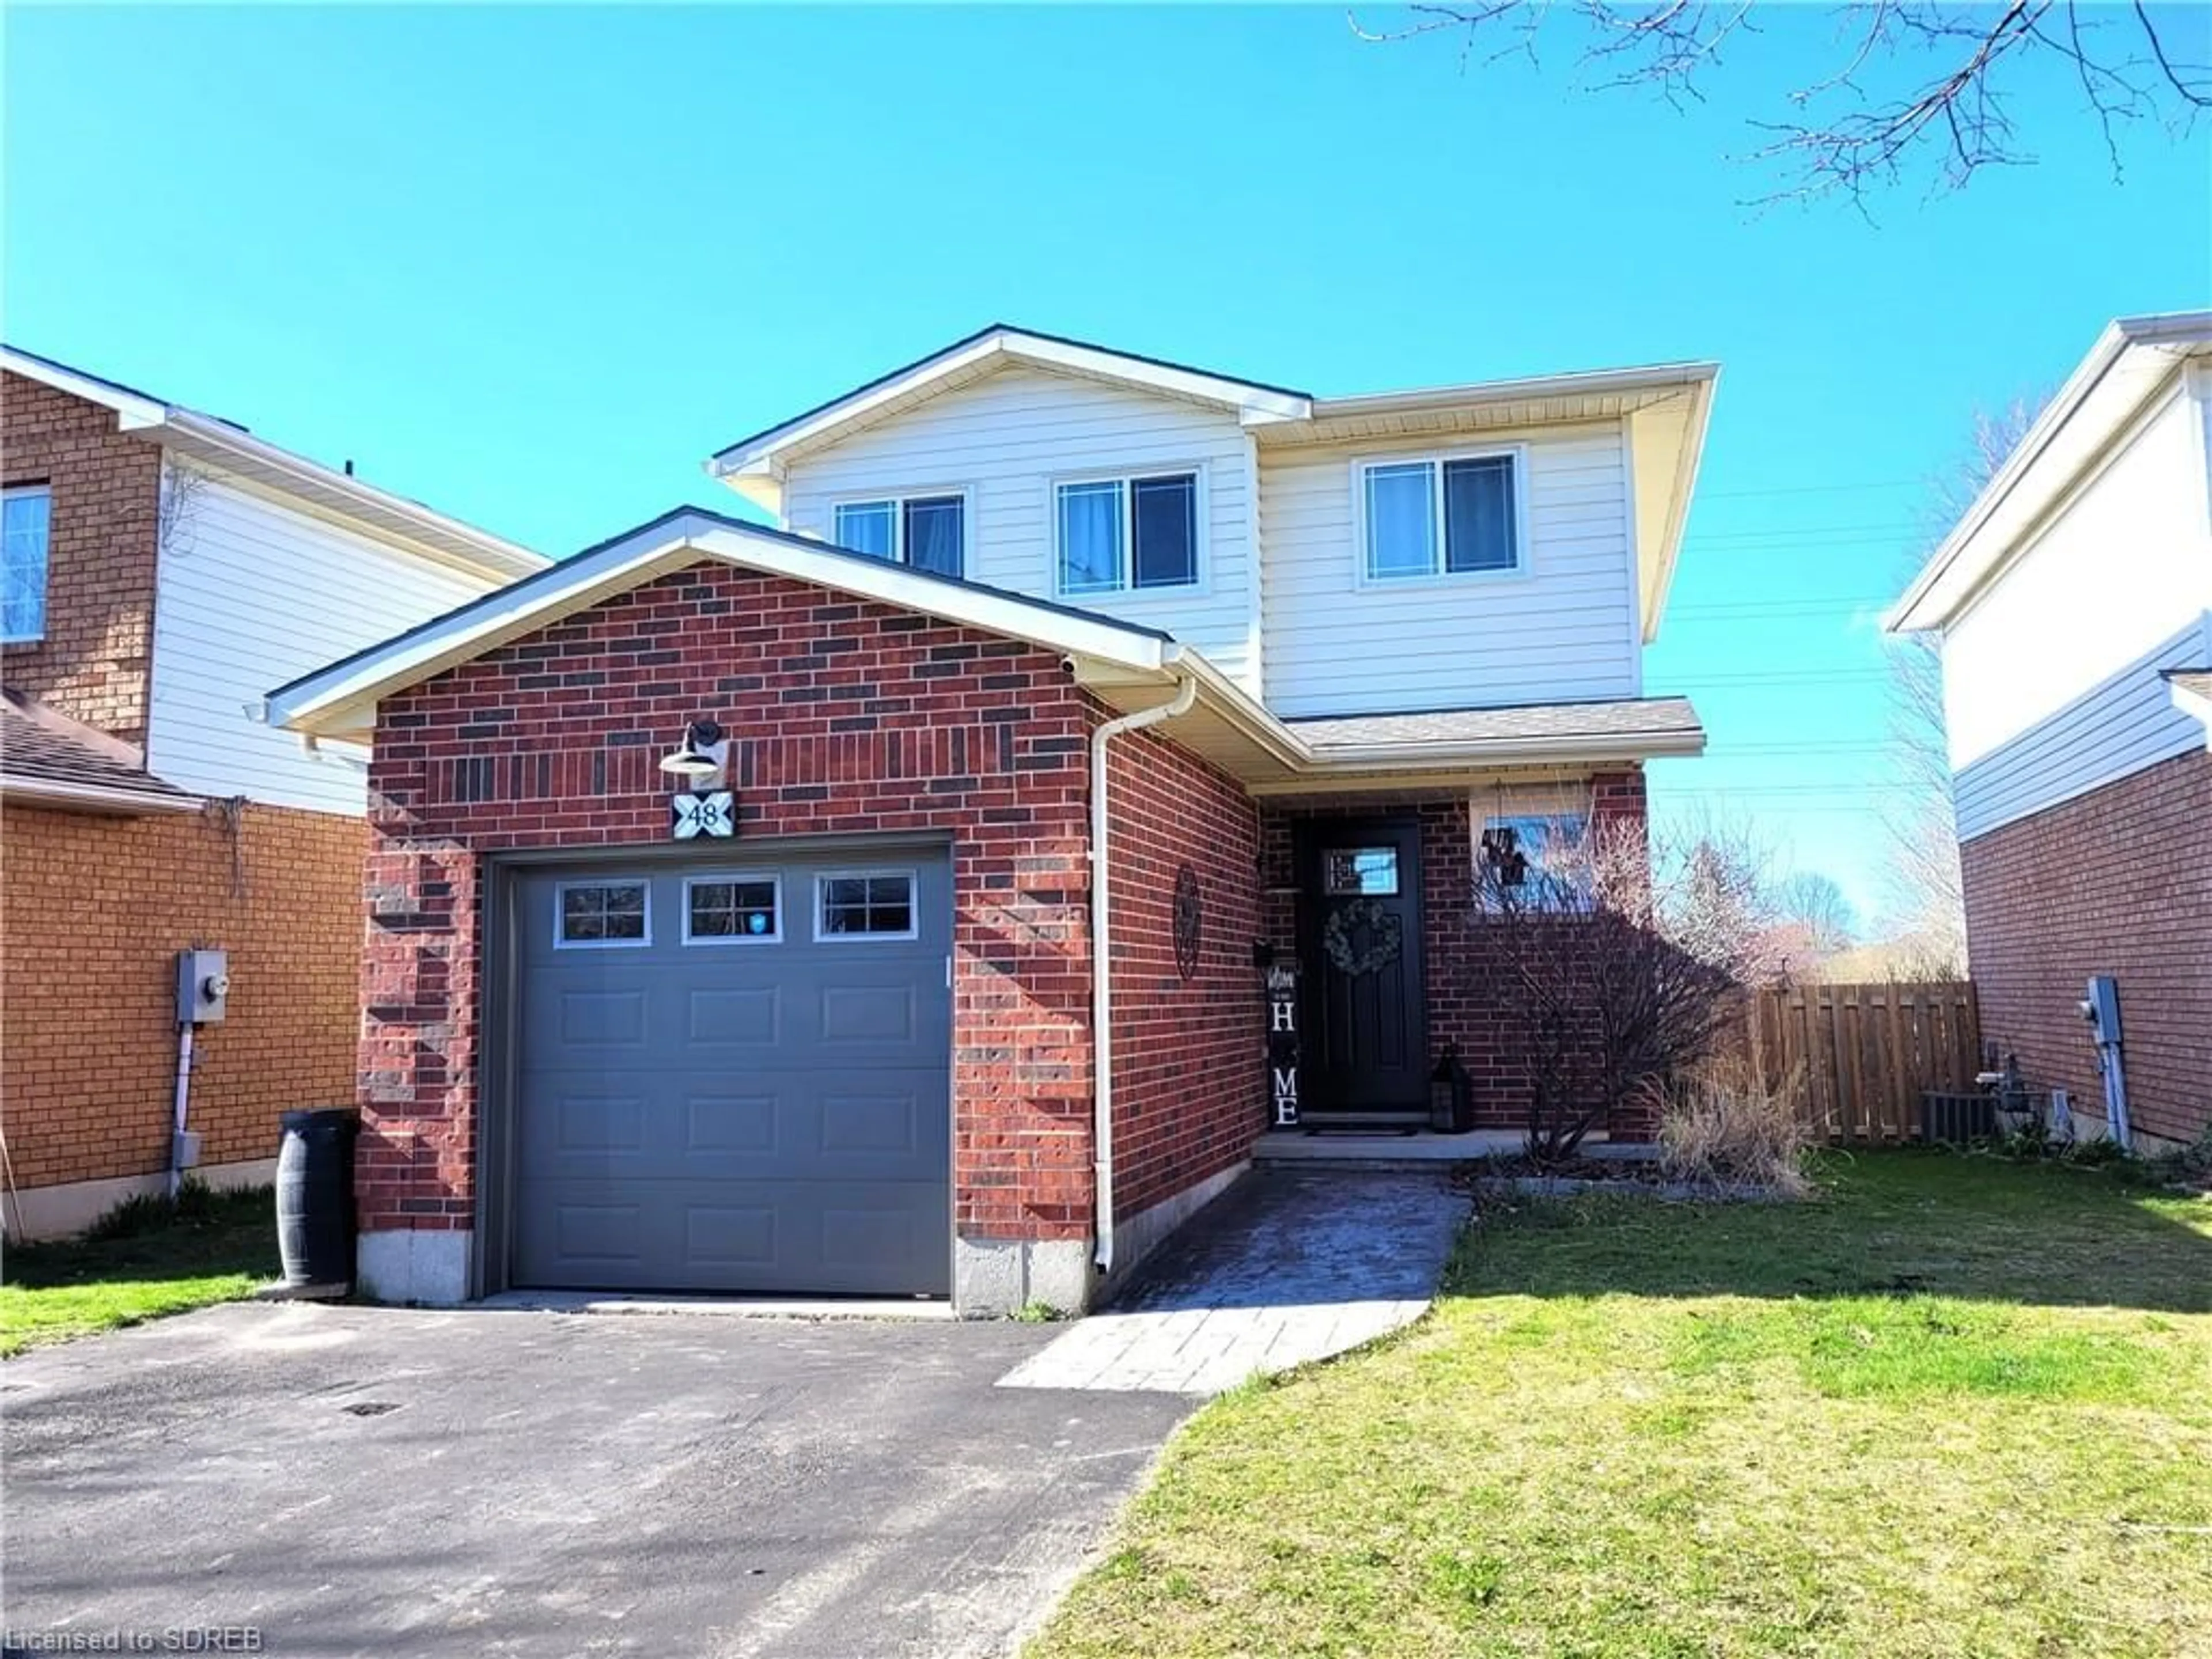 Home with brick exterior material for 48 Joseph St, Tillsonburg Ontario N4G 5M1